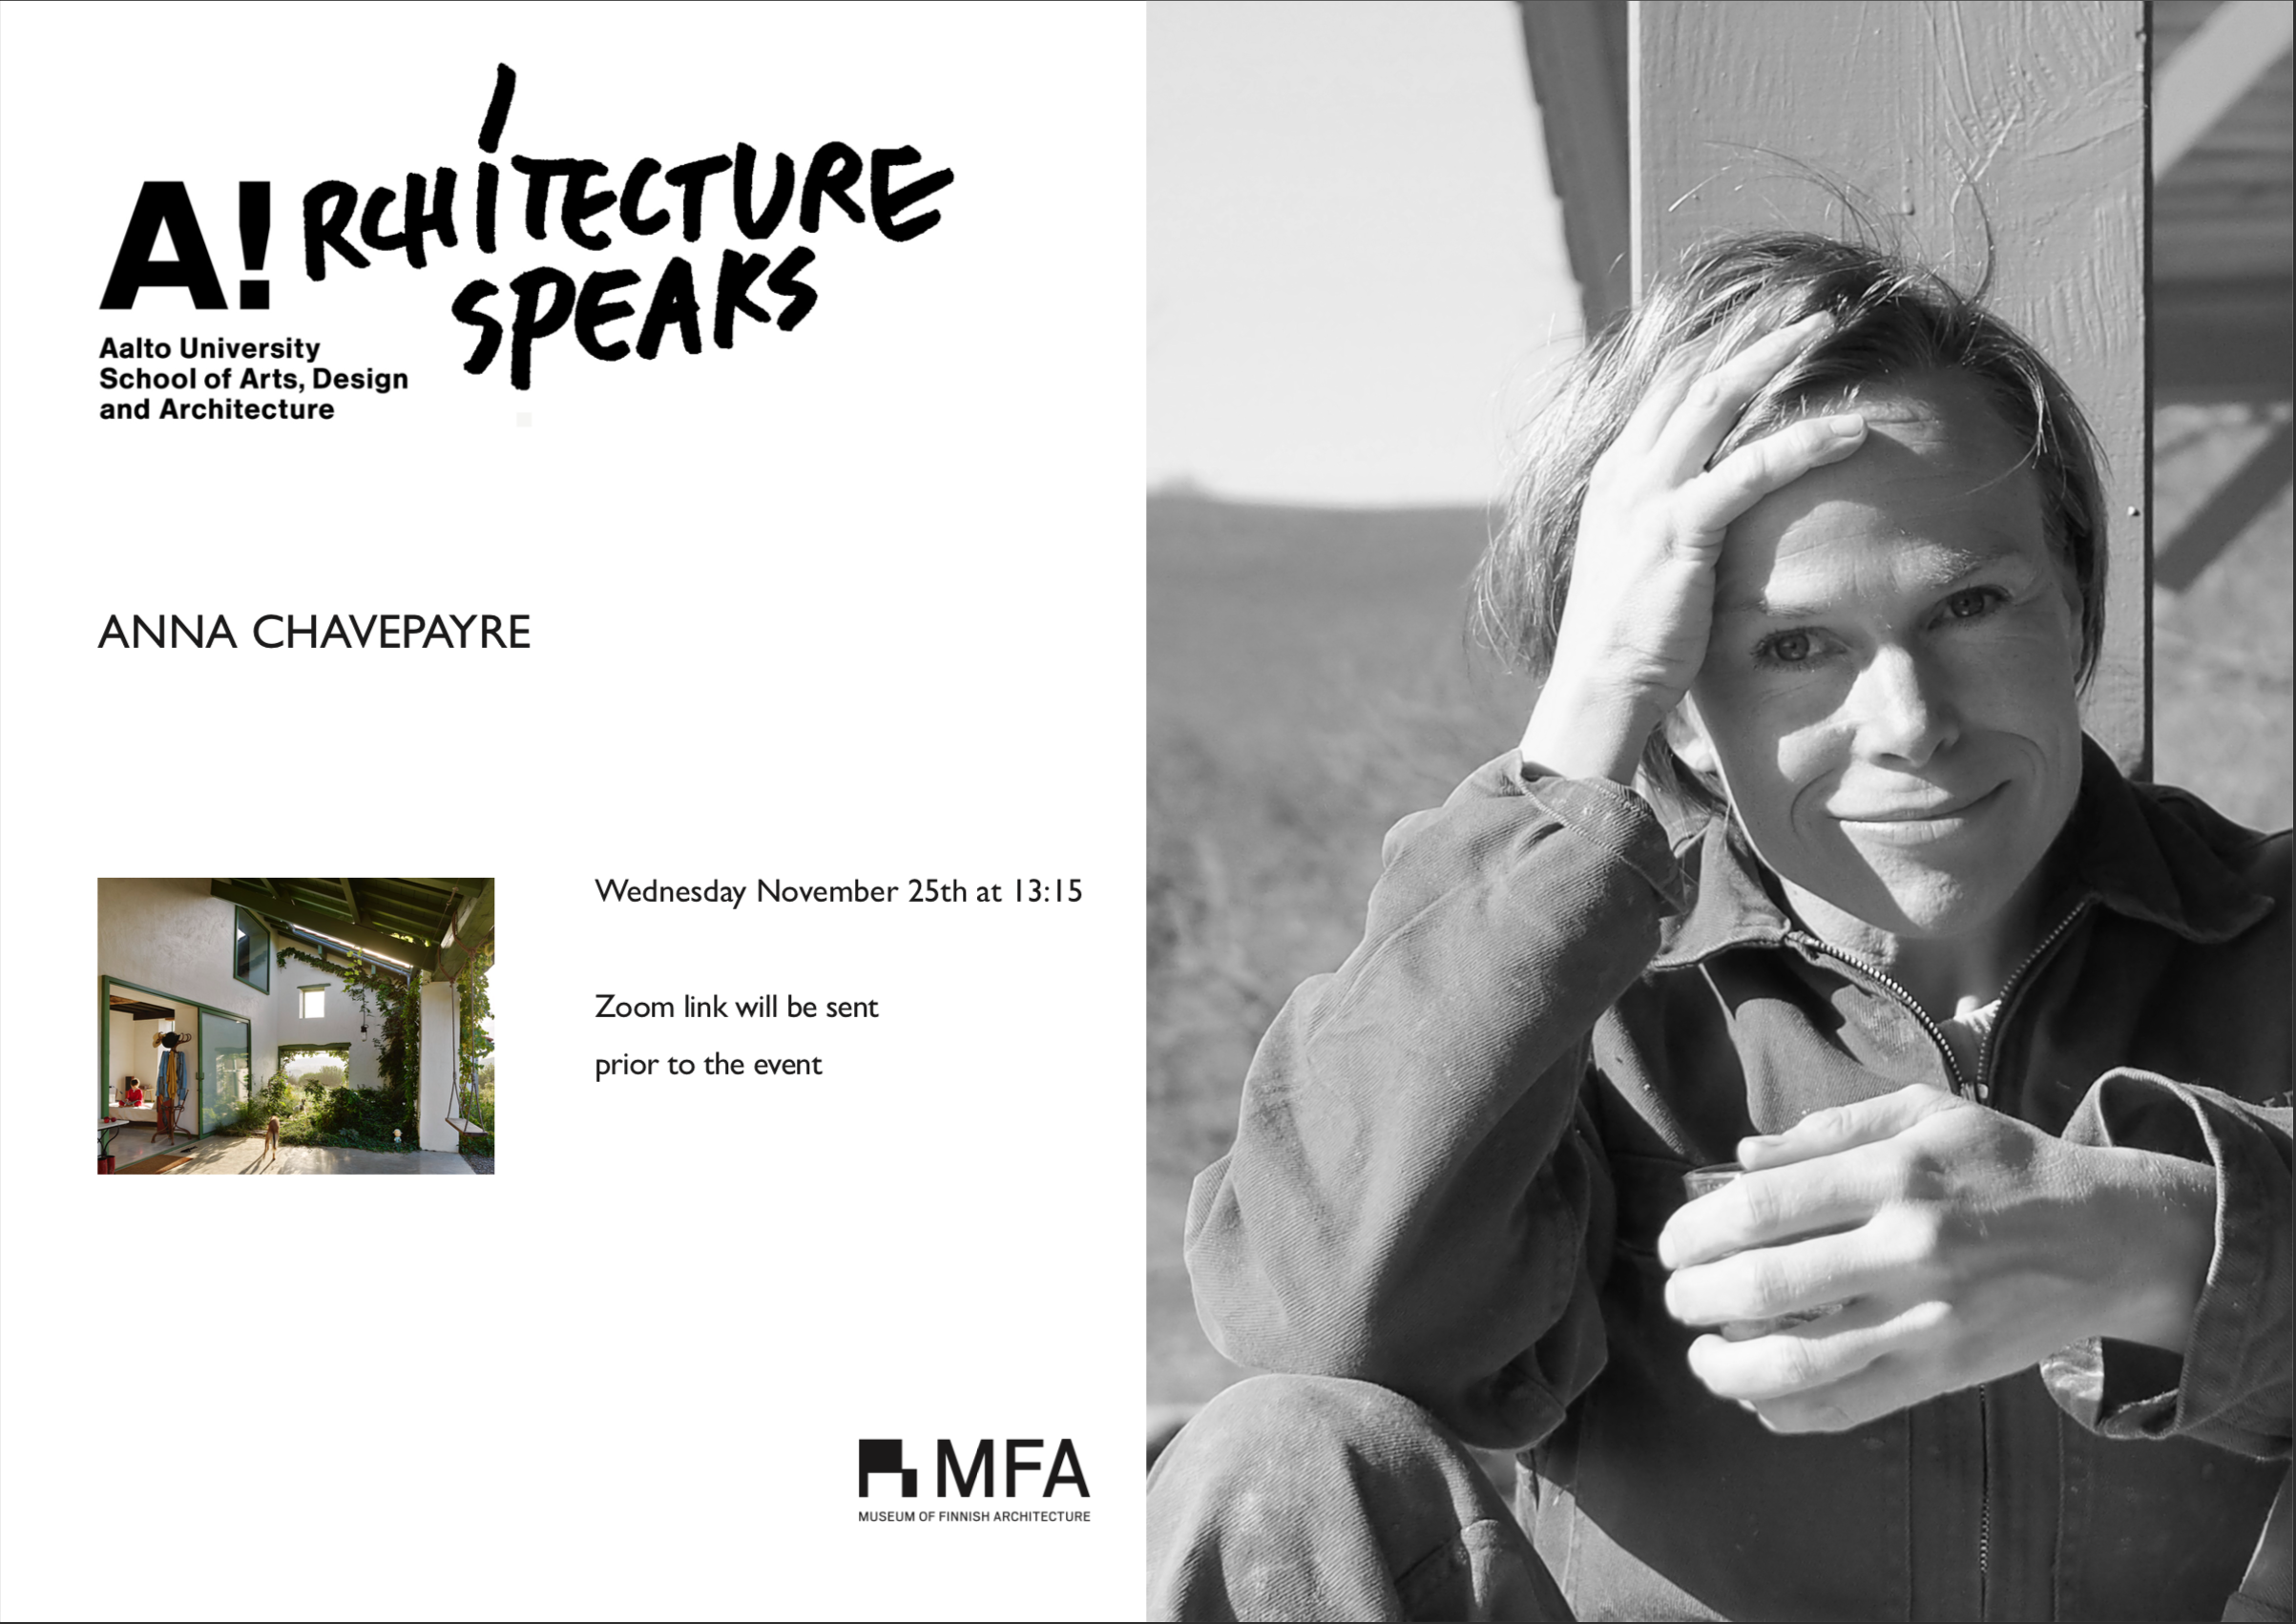 Architecture Speaks Anna Chavepayre -juliste, jossa arkkitehti katsoo kameraan lempeänä käsi otsalla